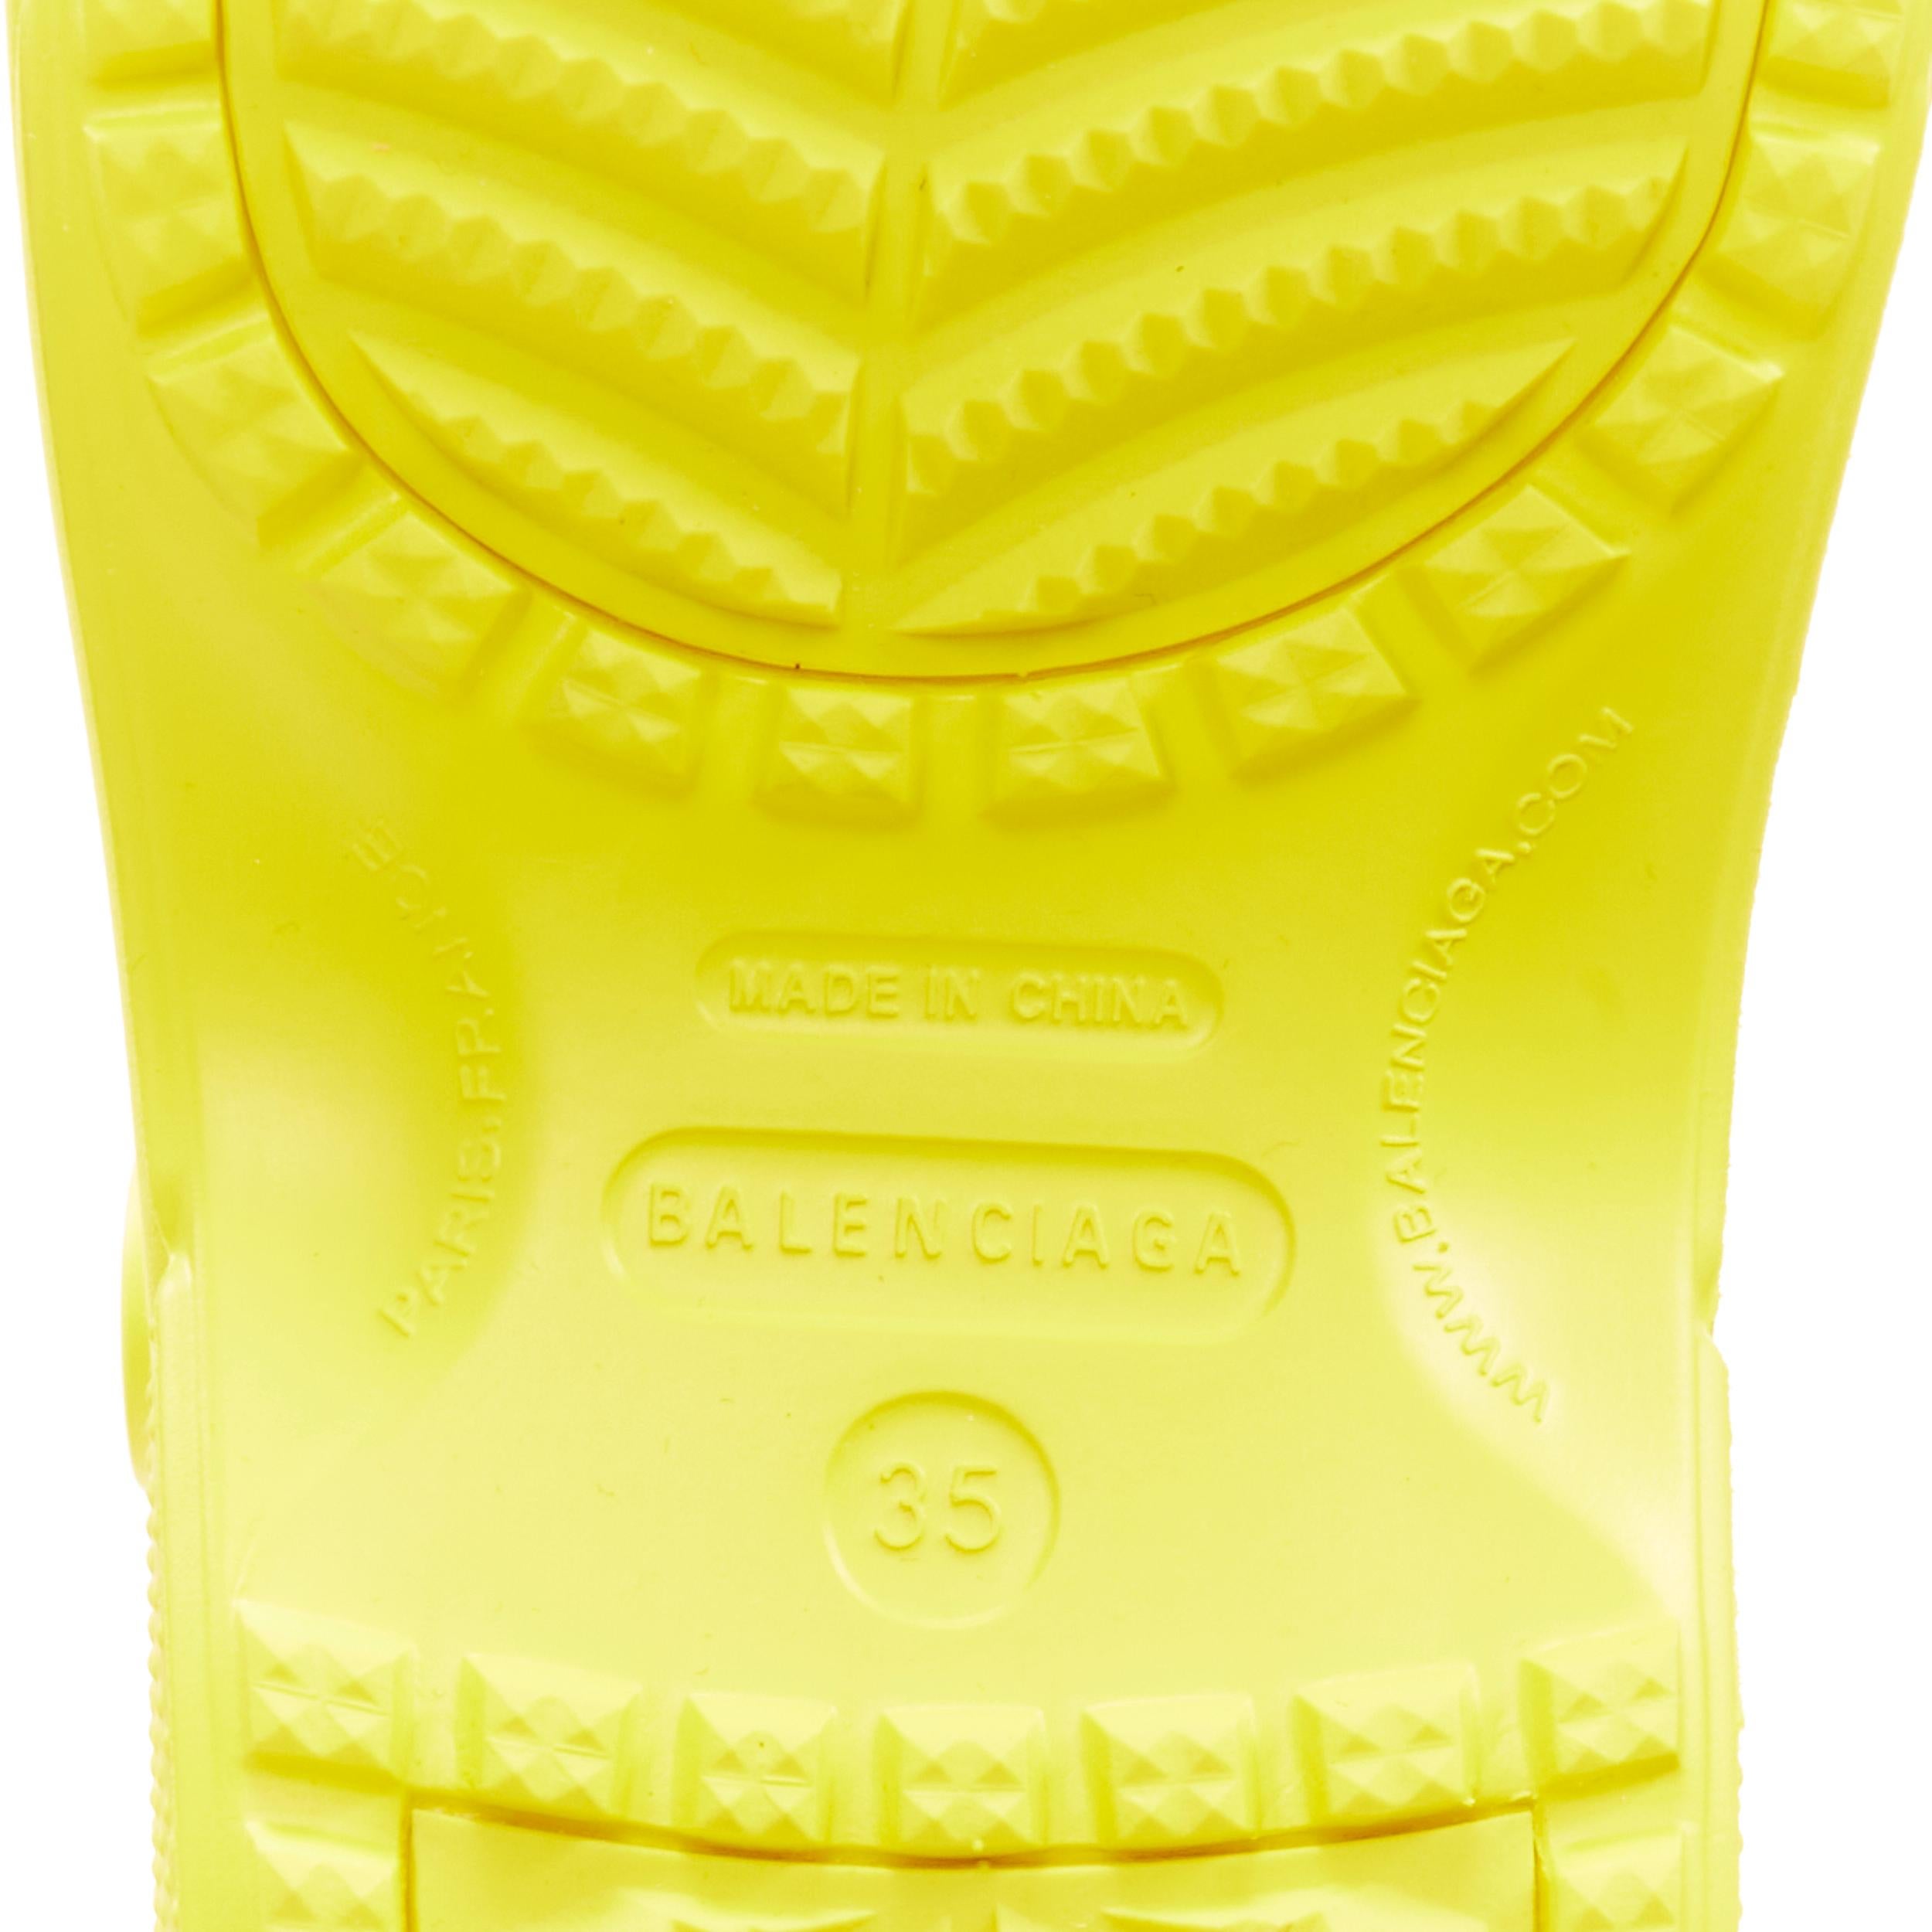 BALENCIAGA CROCS Sandales compensées rares jaune logo gibbet EU35, défilé 2018, neuves 6